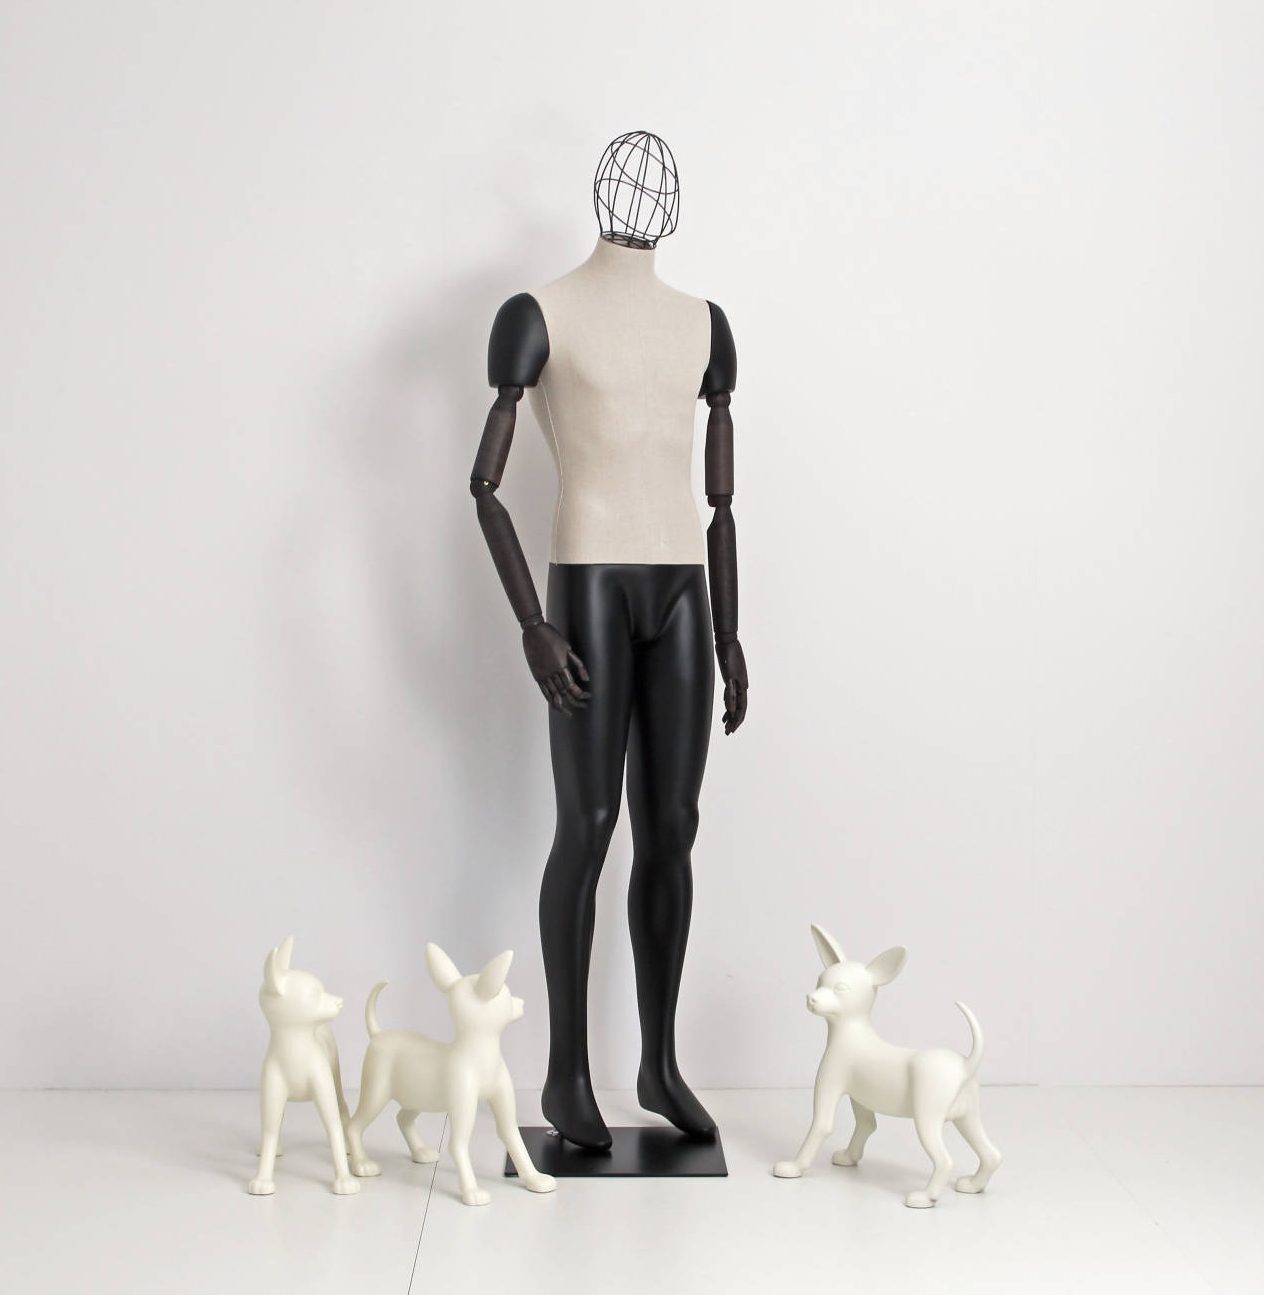 Herre vintage mannequin, hvor kroppen er betrukket med stof, armene er lavet af træ og er bevægelige; Hovedet er et metal / trådhoved.